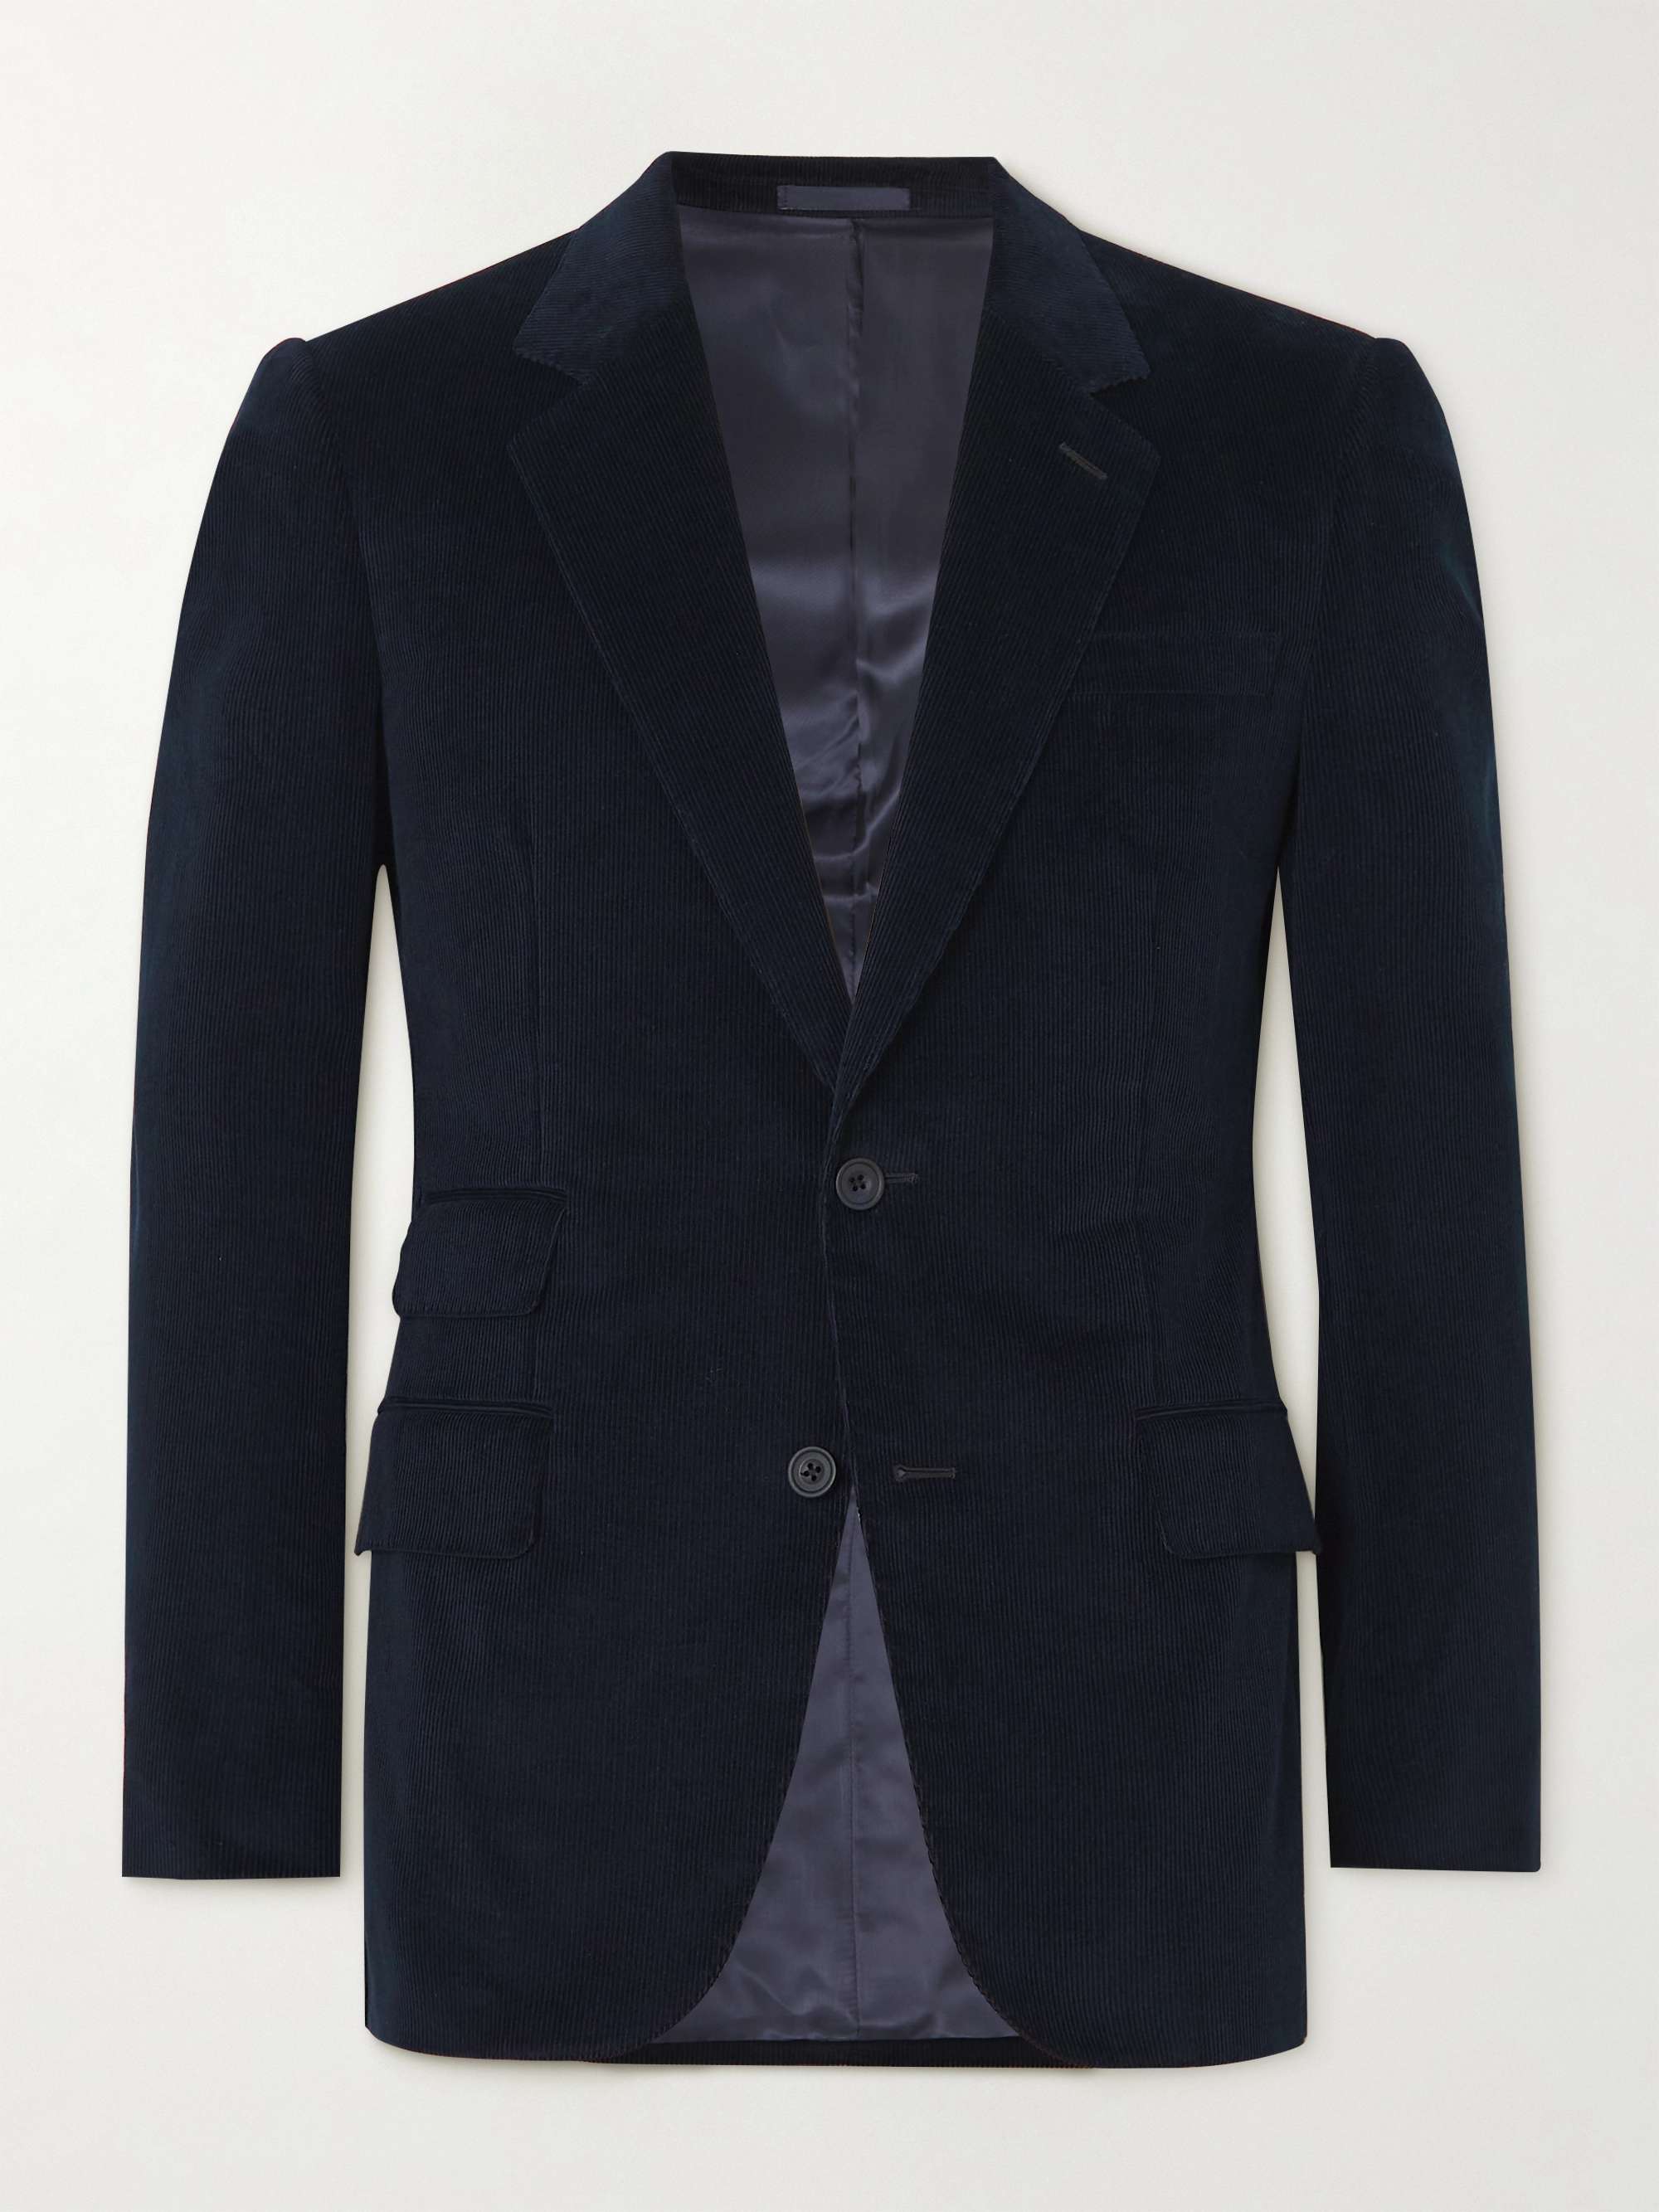 KINGSMAN Slim-Fit Cotton and Cashmere-Blend Corduroy Suit Jacket